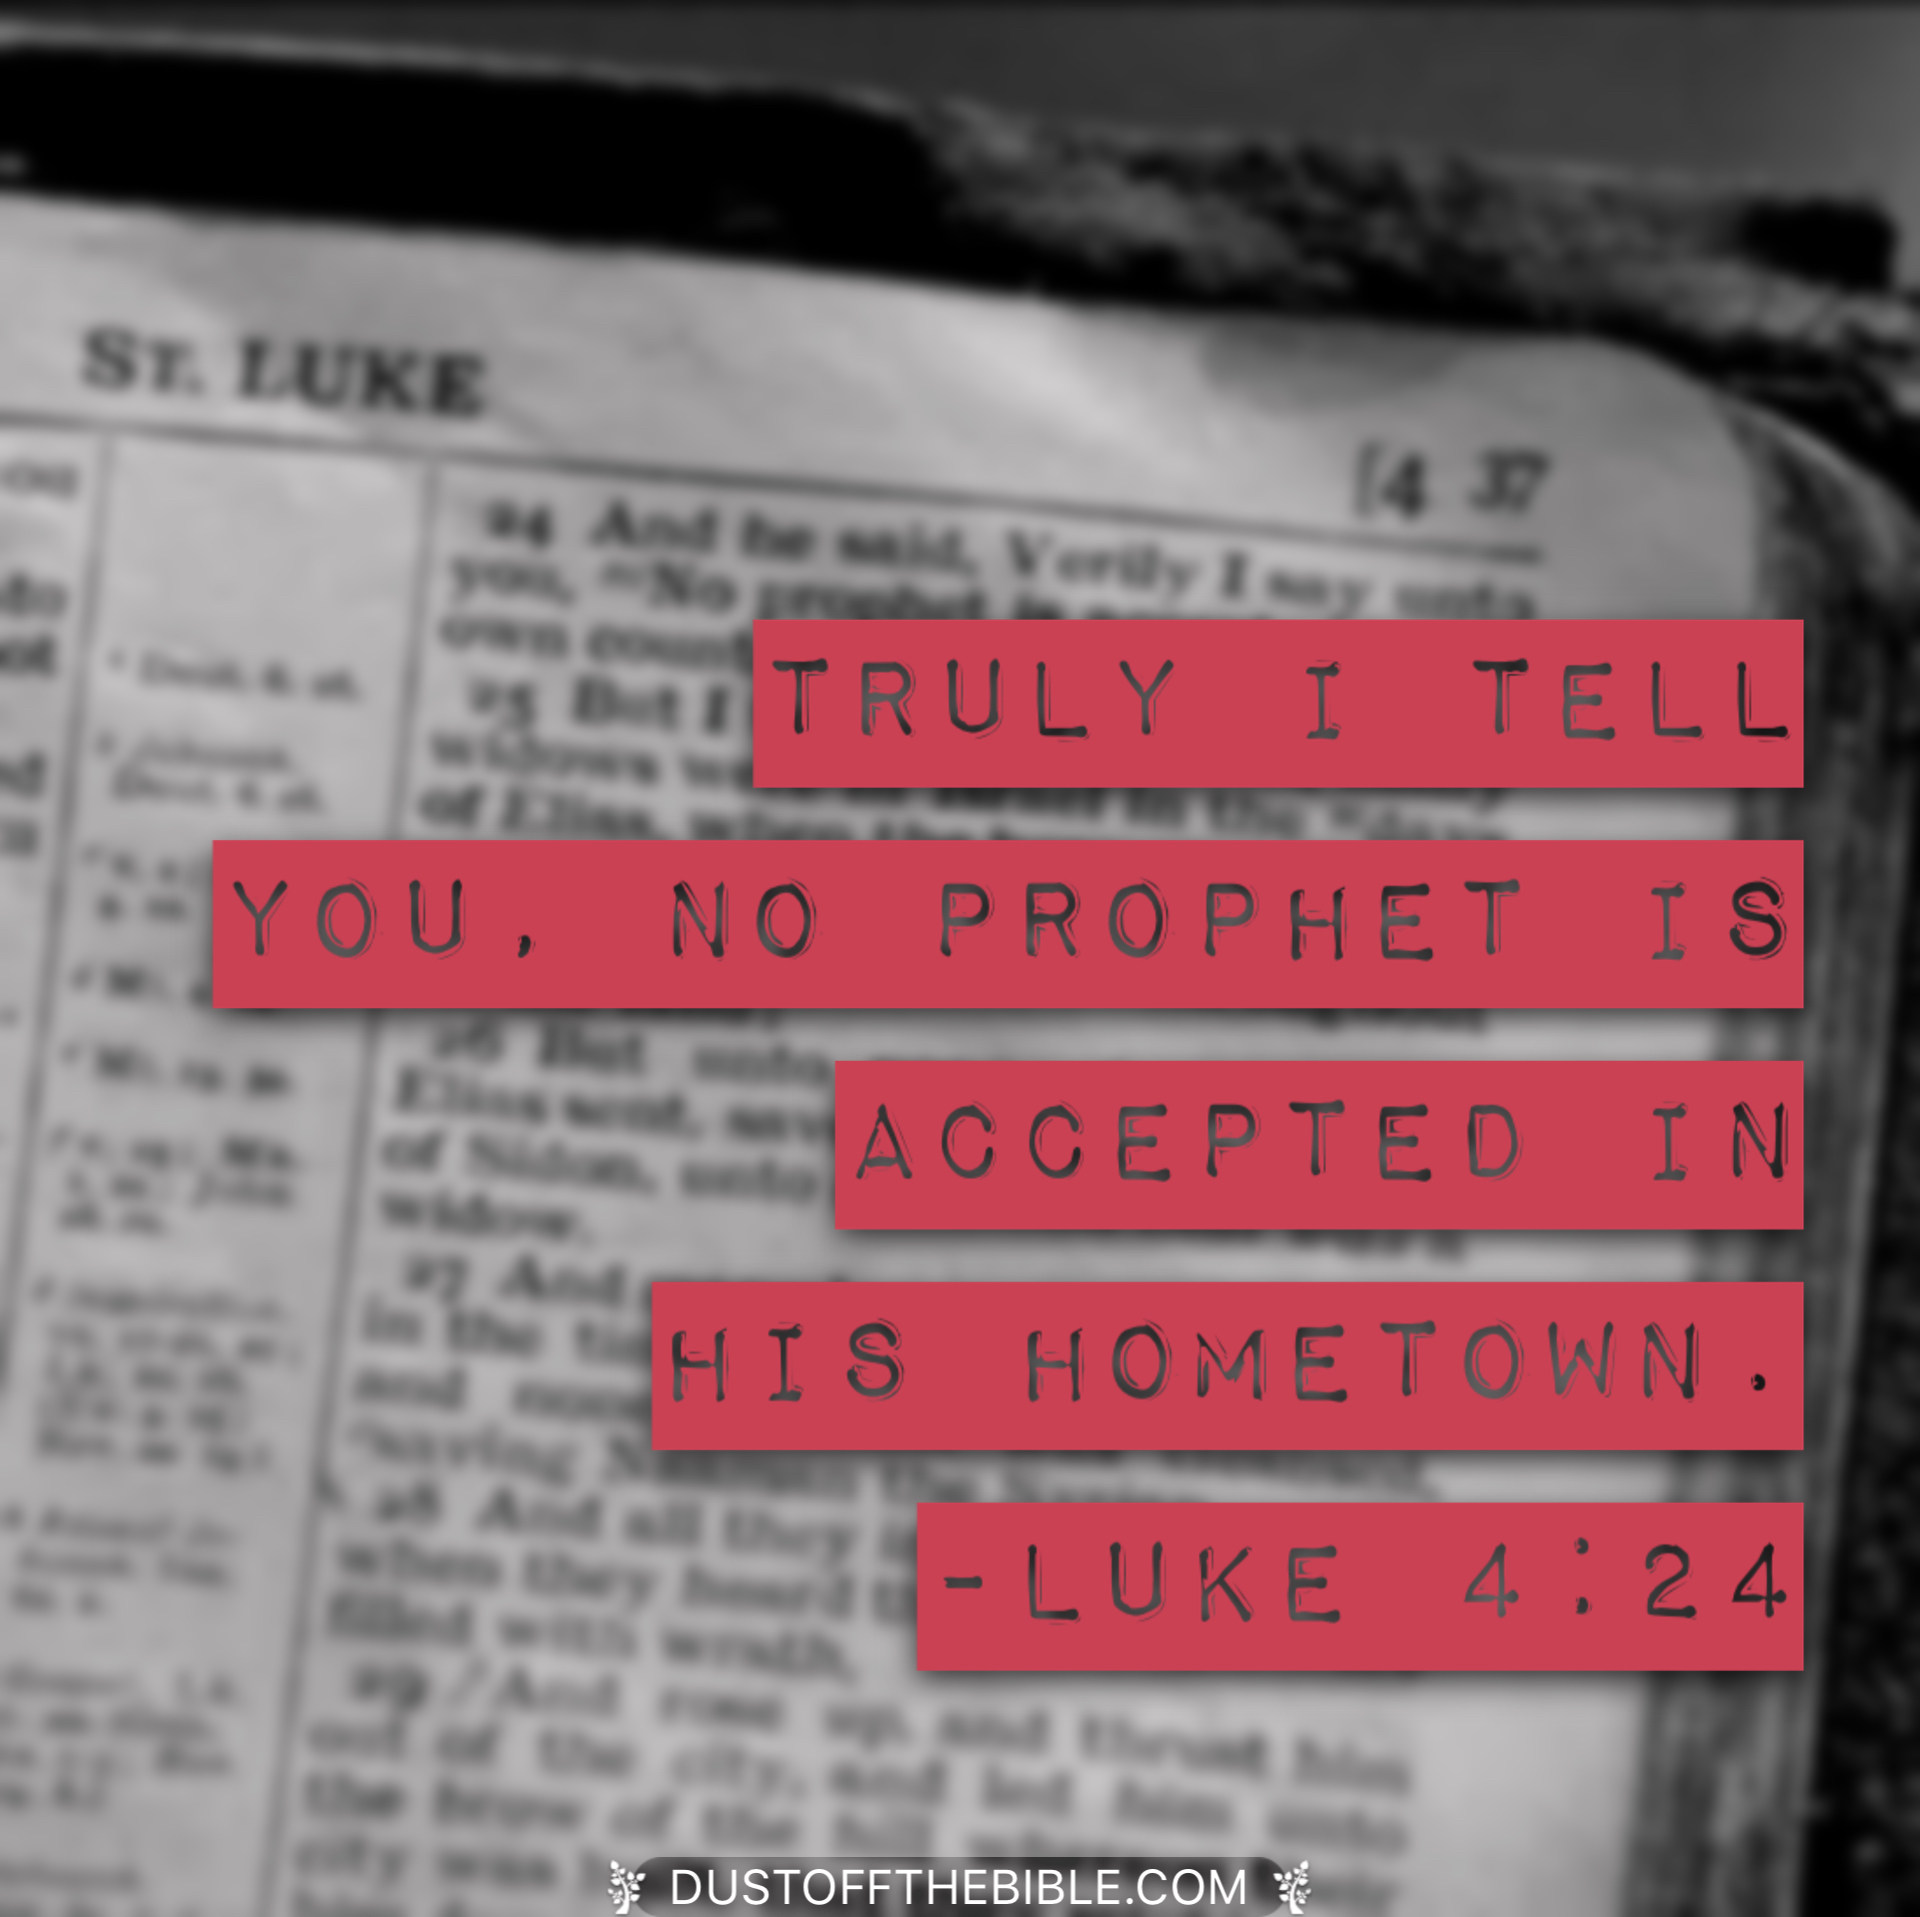 Luke 4:24